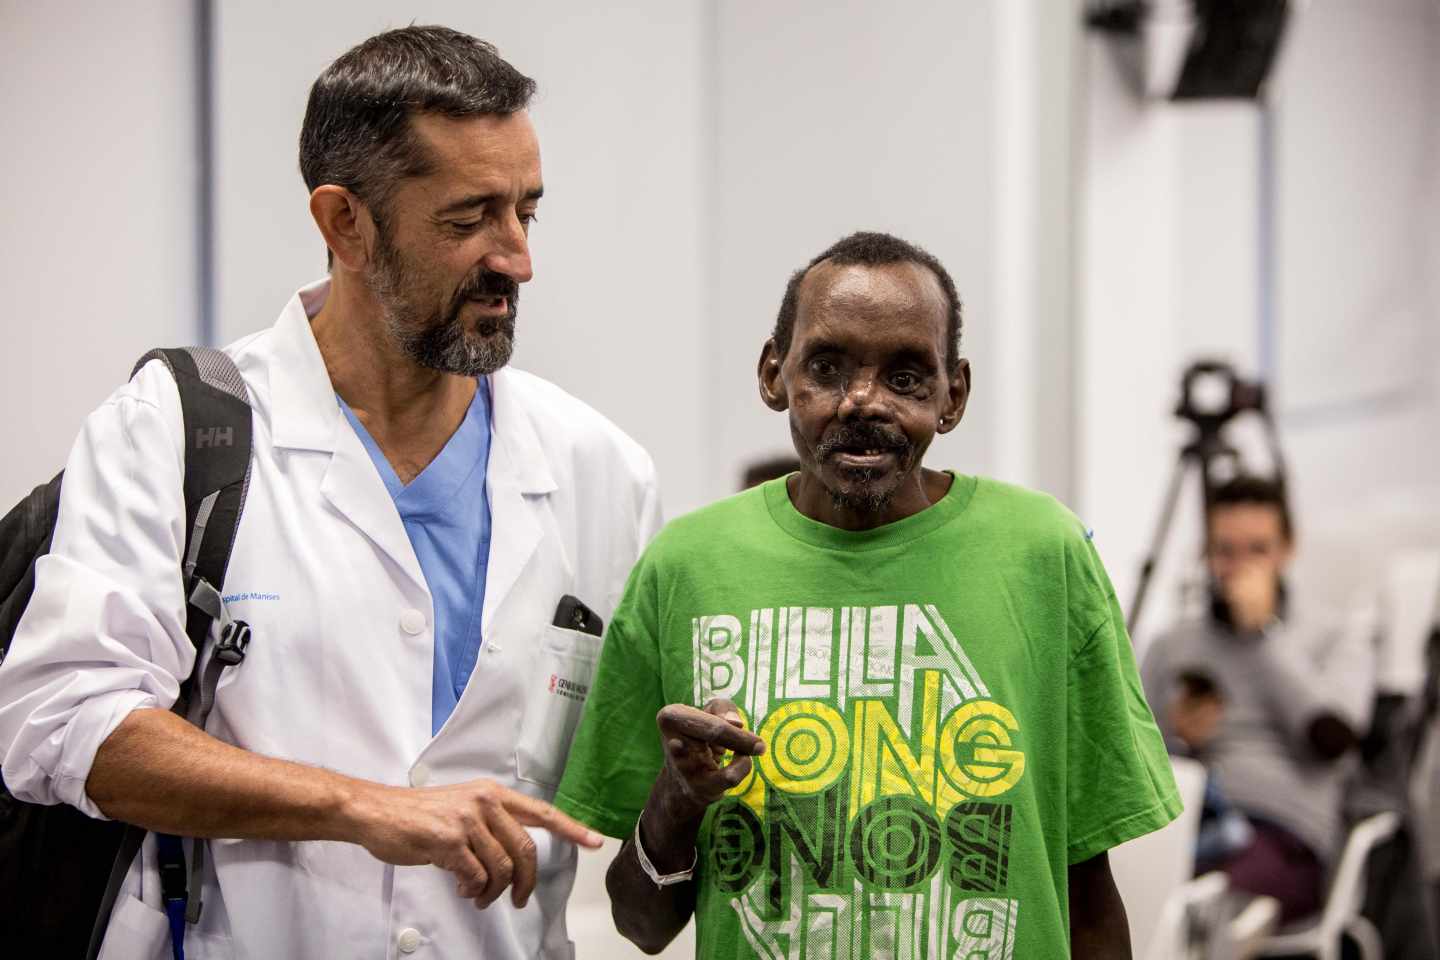 El cirujano Pedro Cavadas, junto al paciente keniano en Manises.